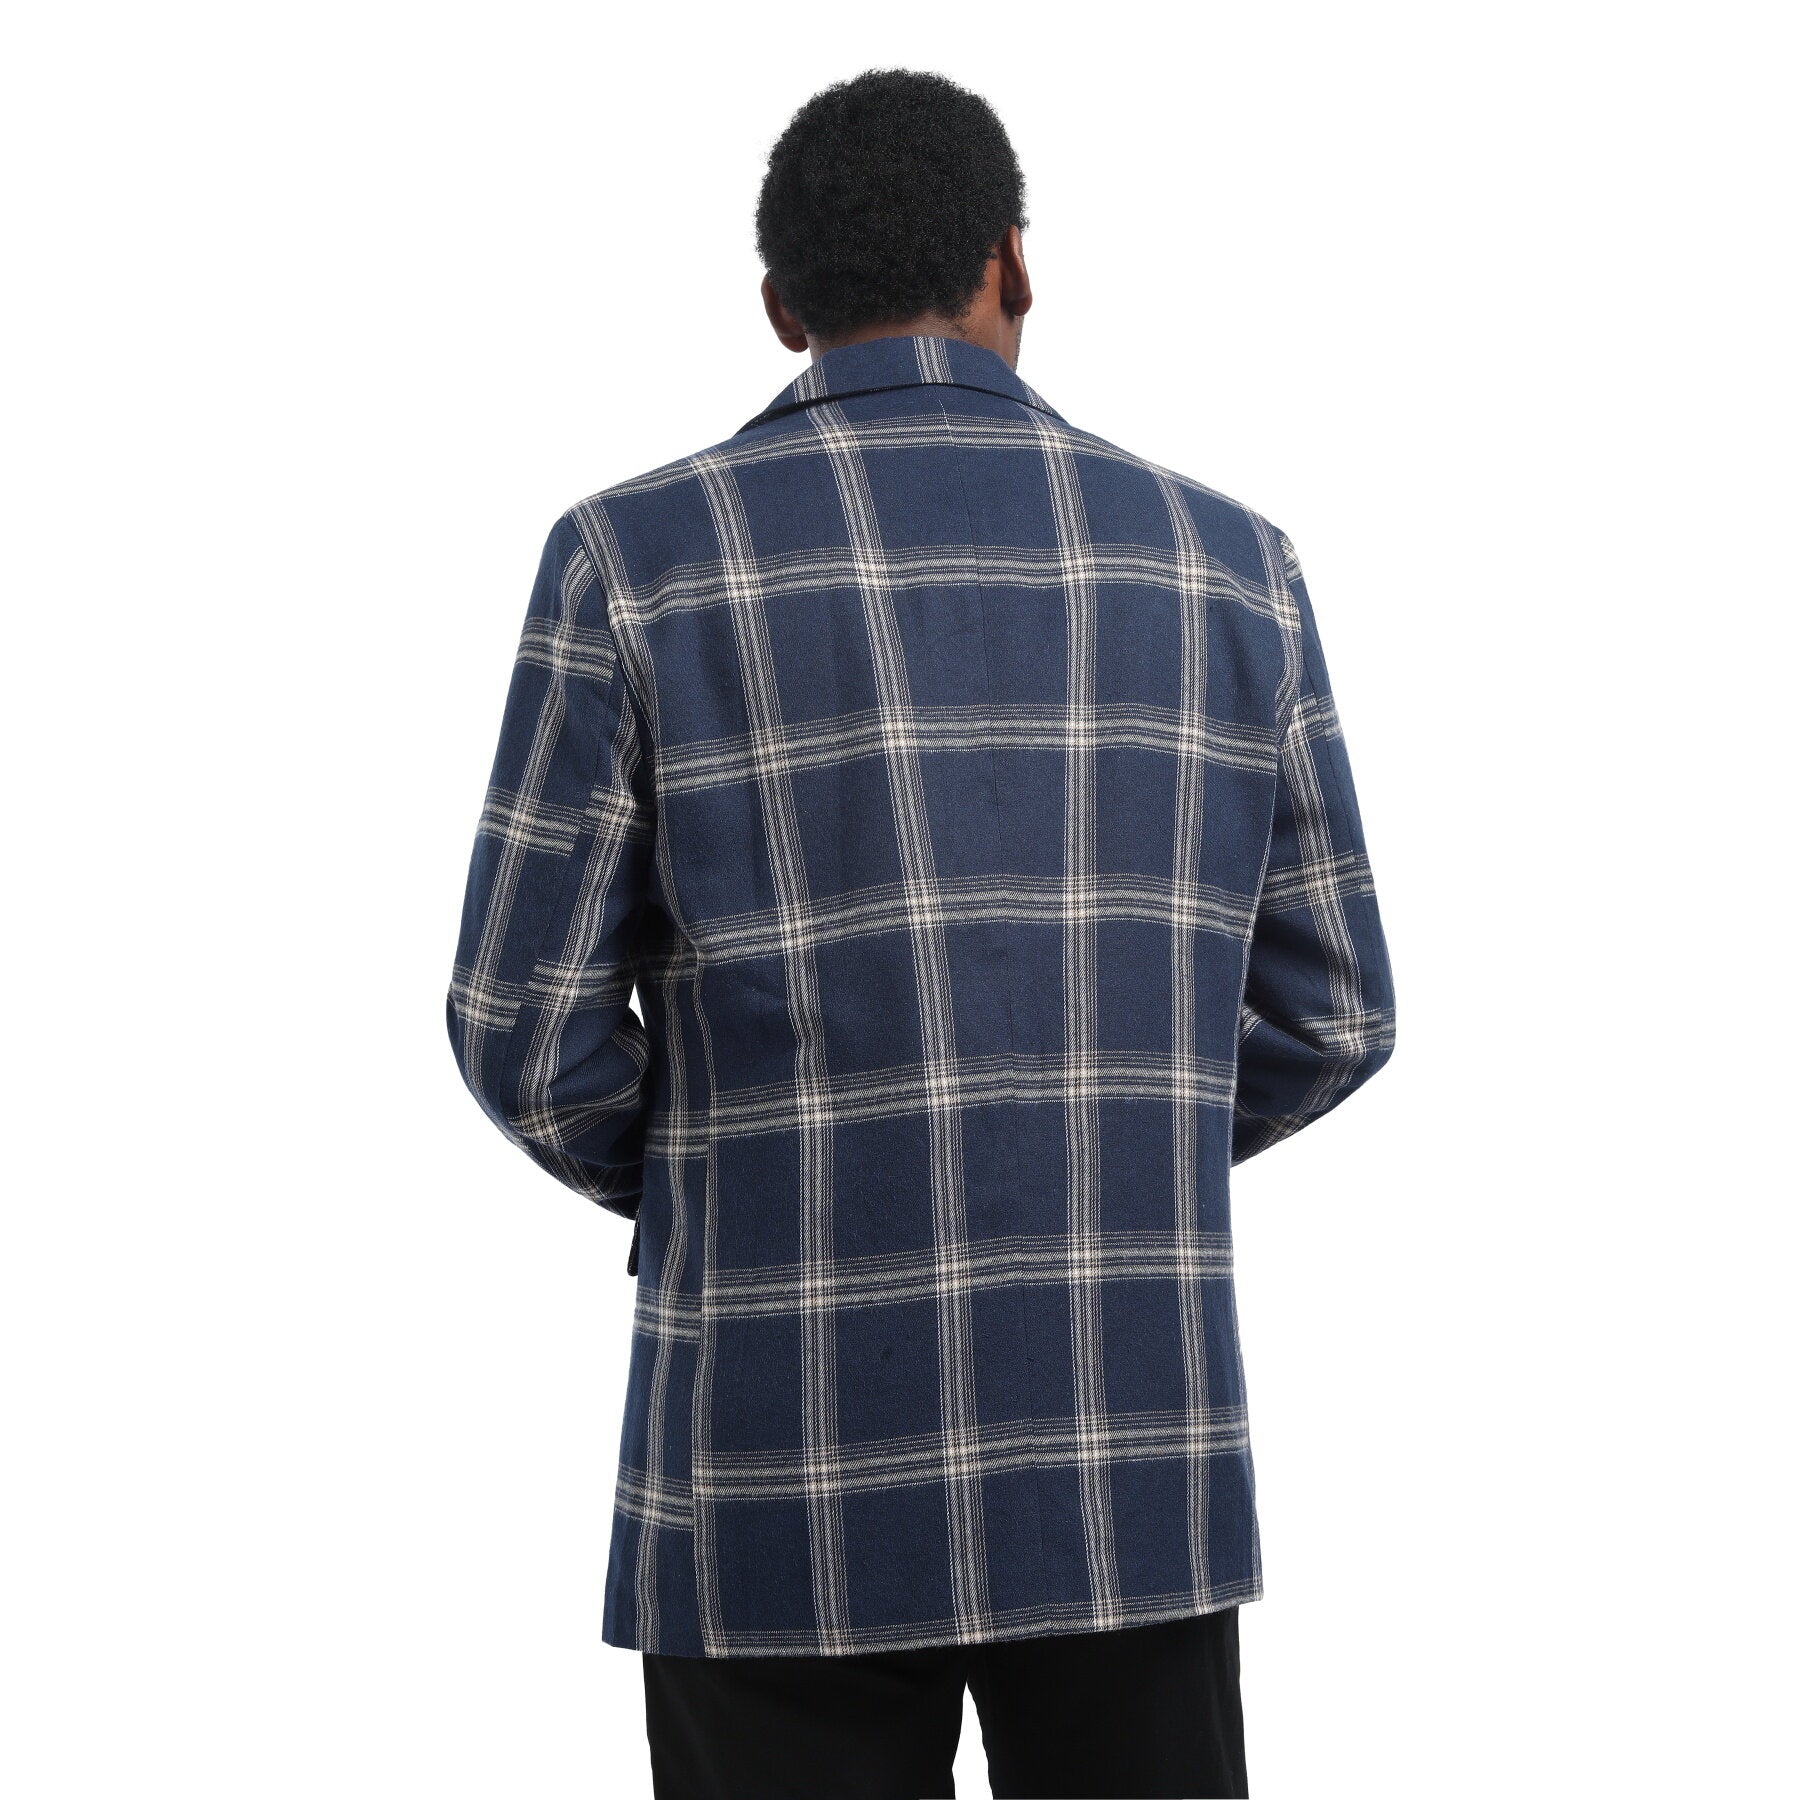 Cloudstyle Men's 2-Piece Suits Slim Fit 1 Button Dress Suit Jacket